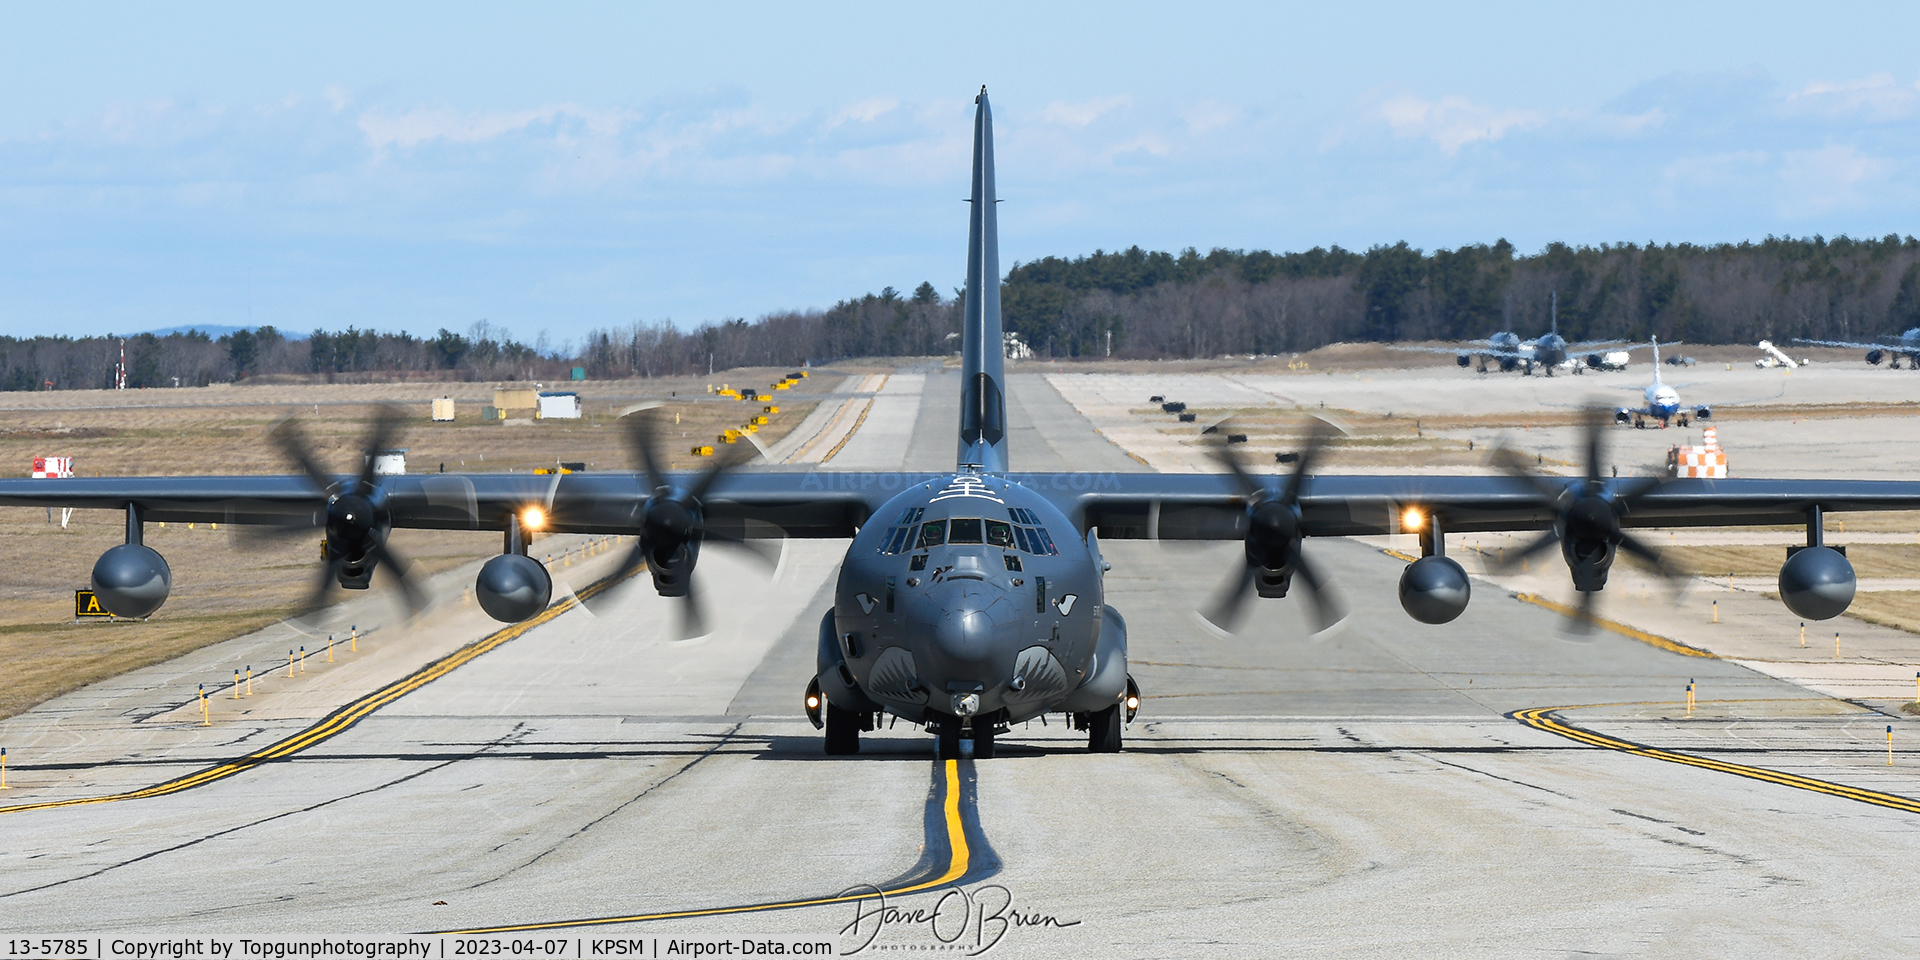 13-5785, 2015 Lockheed Martin HC-130J Combat King II Hercules C/N 382-5785, KING31 71st RQS